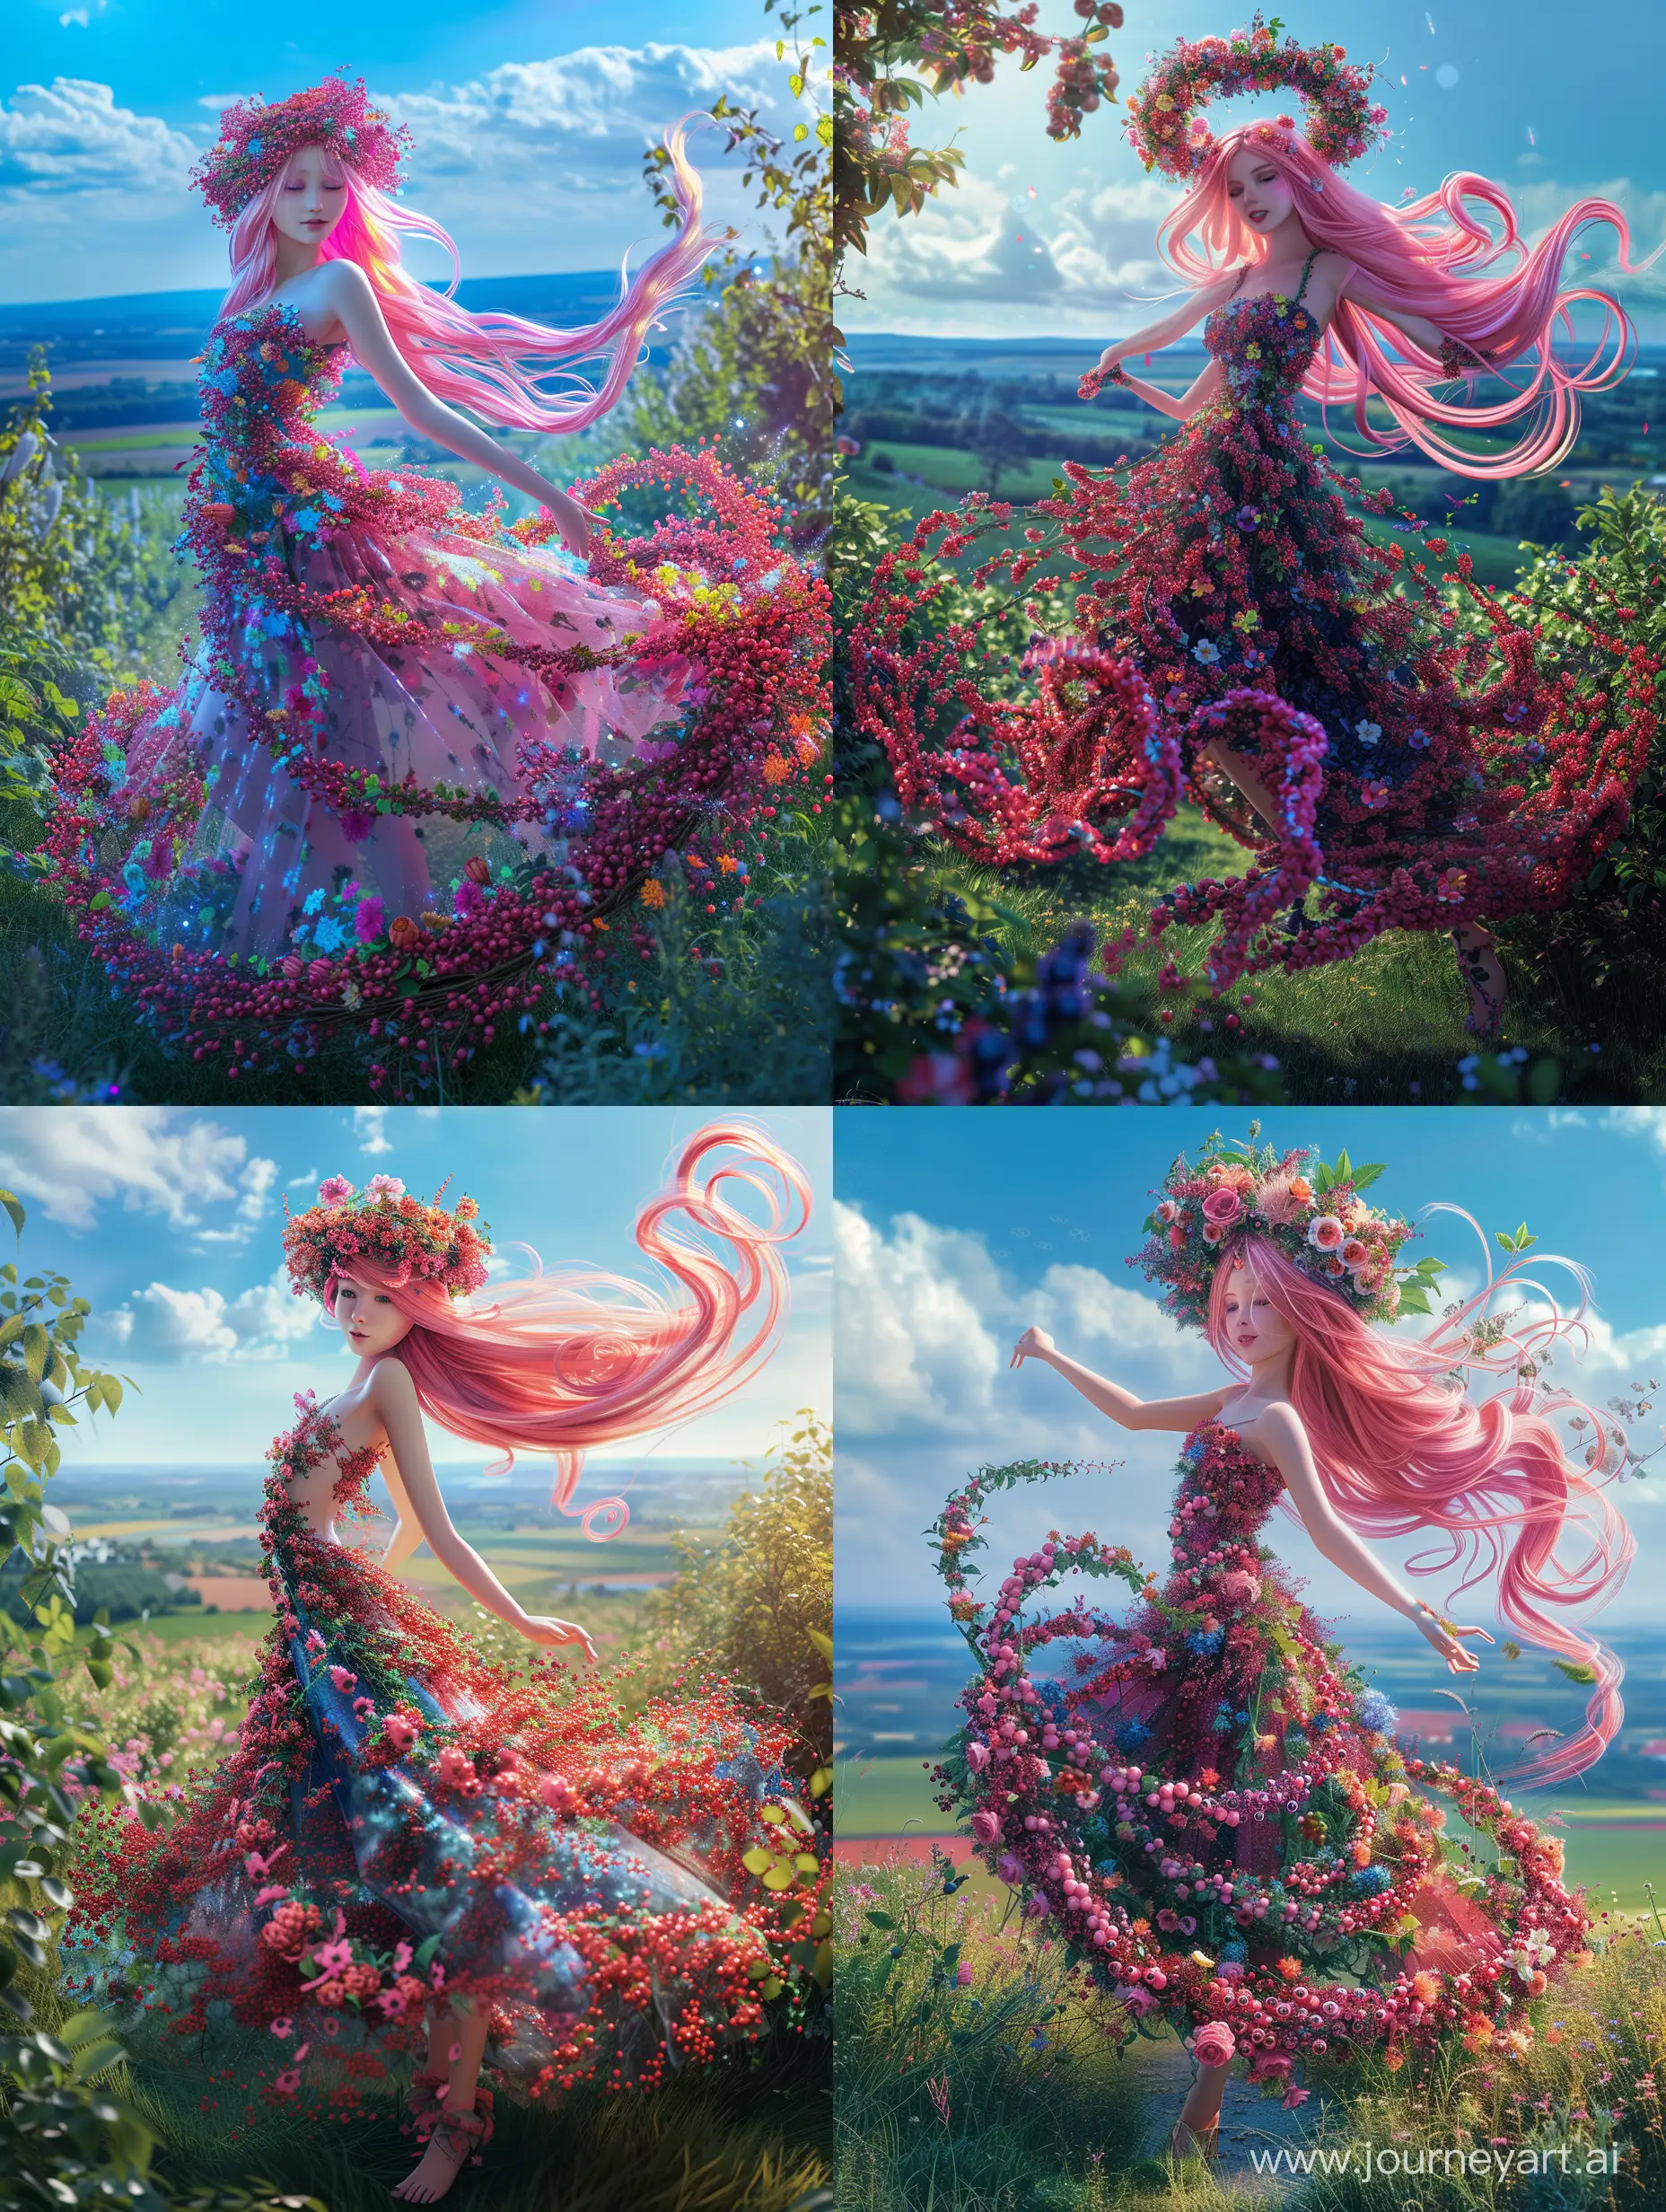 Enchanting-Summer-Queen-Dancing-in-a-Garden-of-Blooms